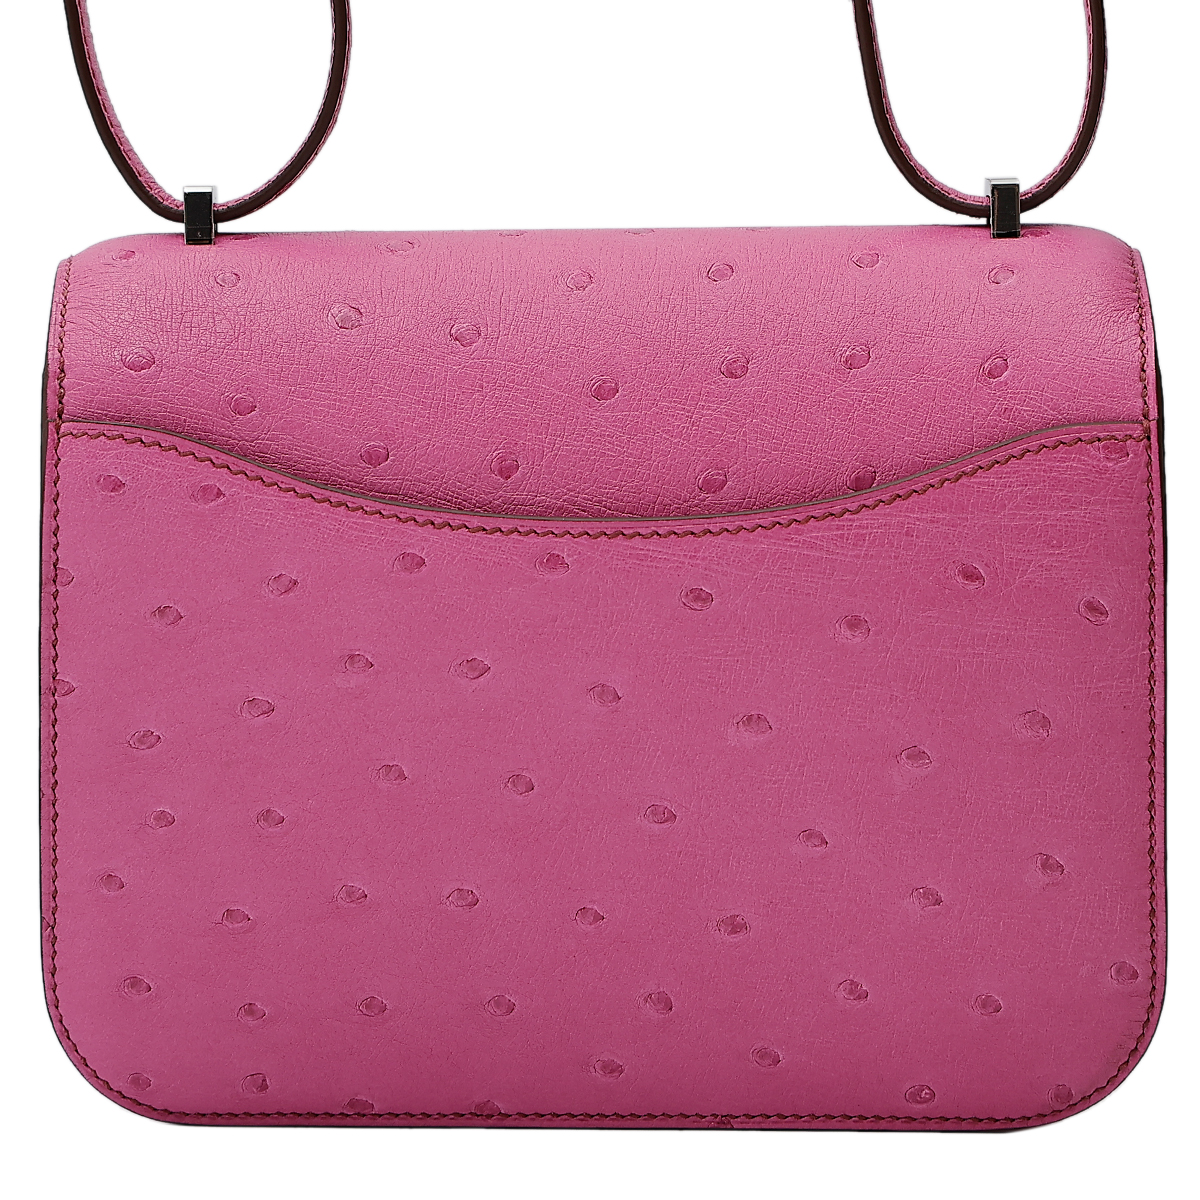 Hermès Constance 18 Fuschia Pink Ostrich Palladium hardware - The 